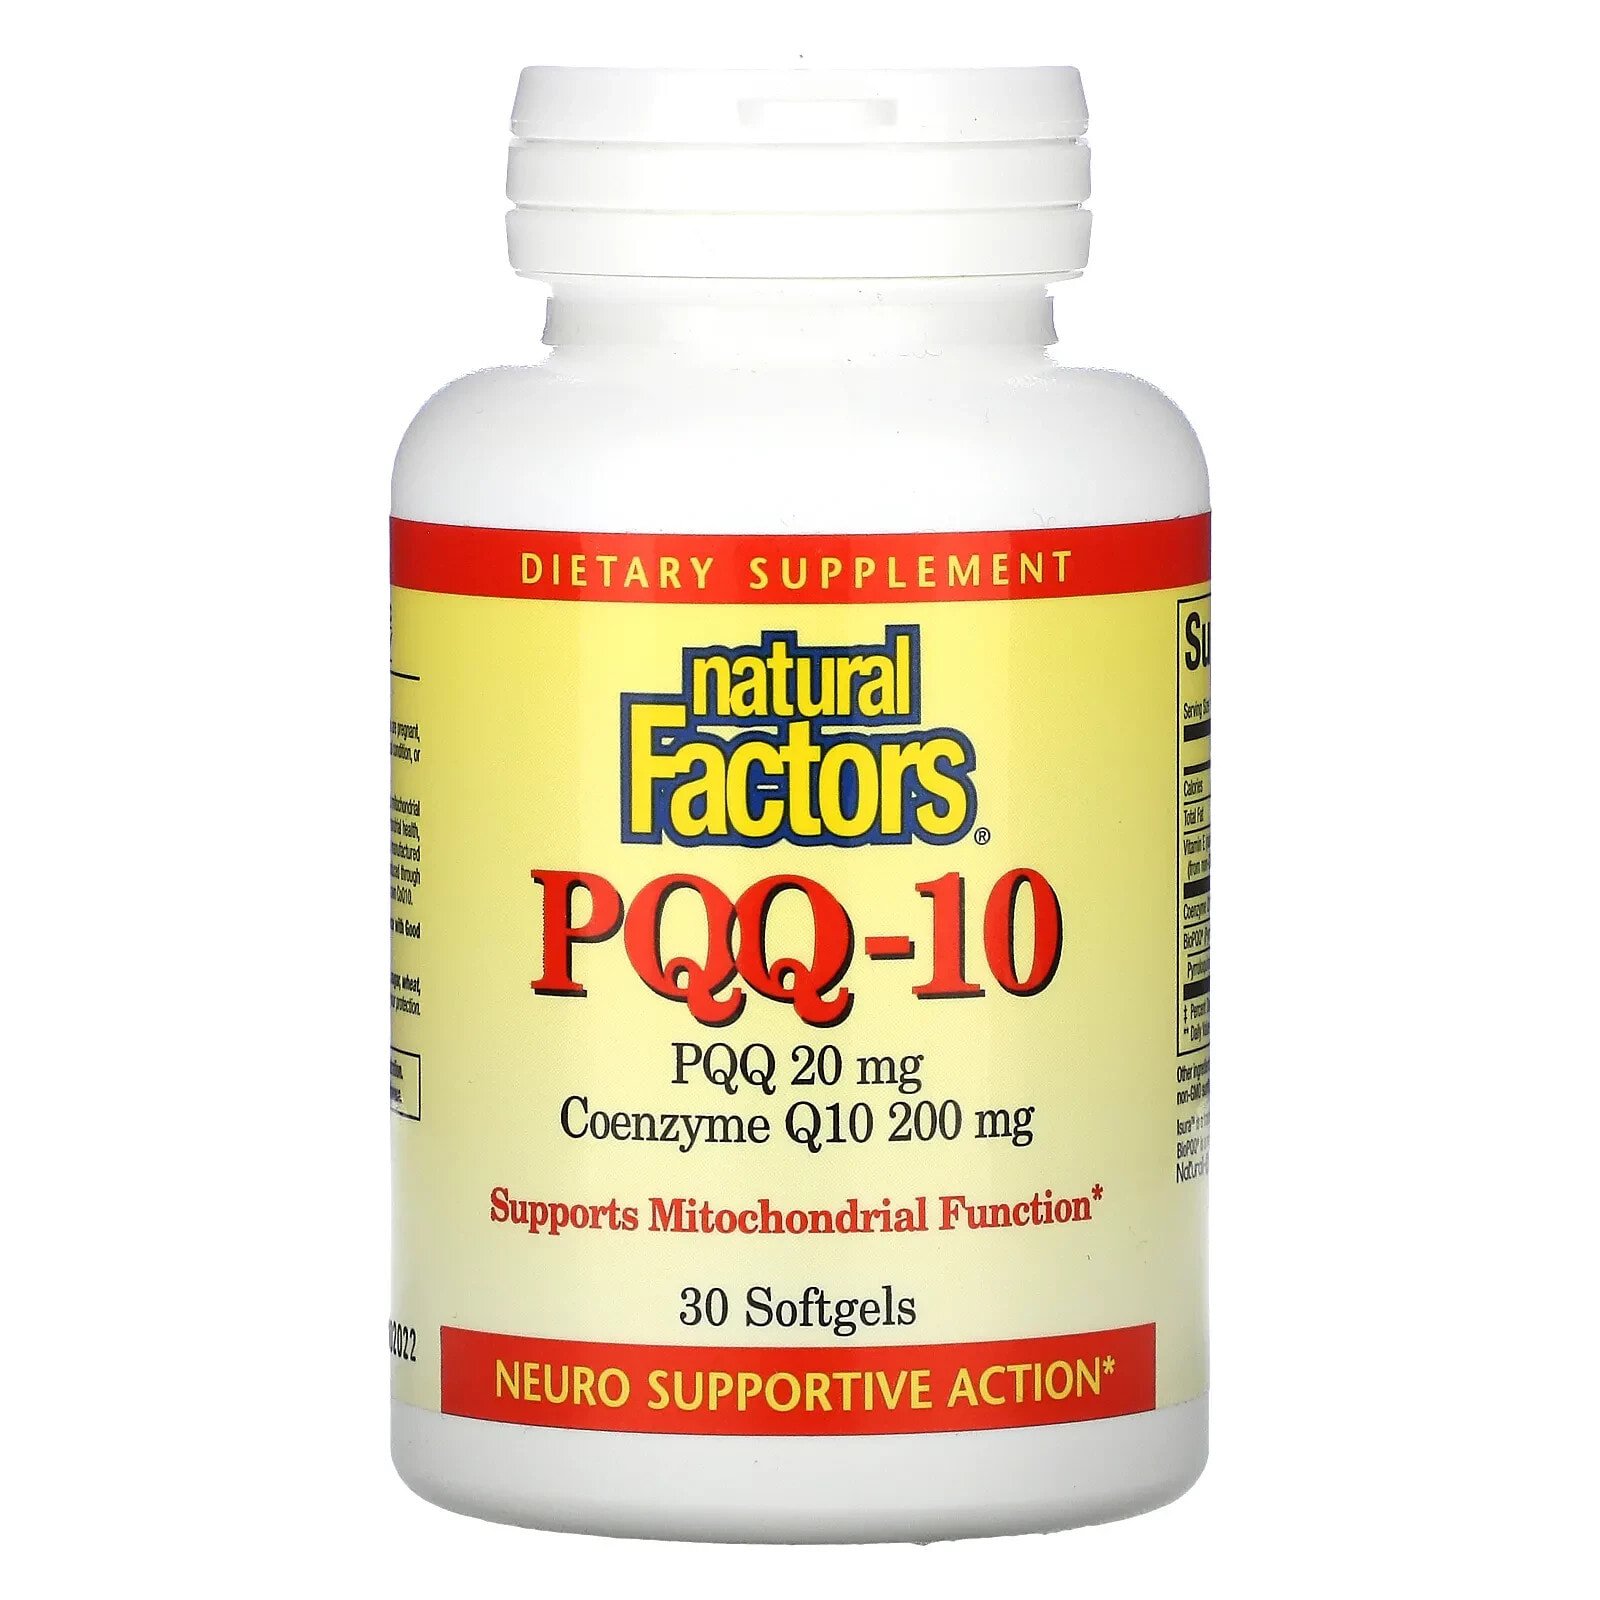 PQQ-10, PQQ 20 mg, CoQ10 200 mg, 60 Softgels